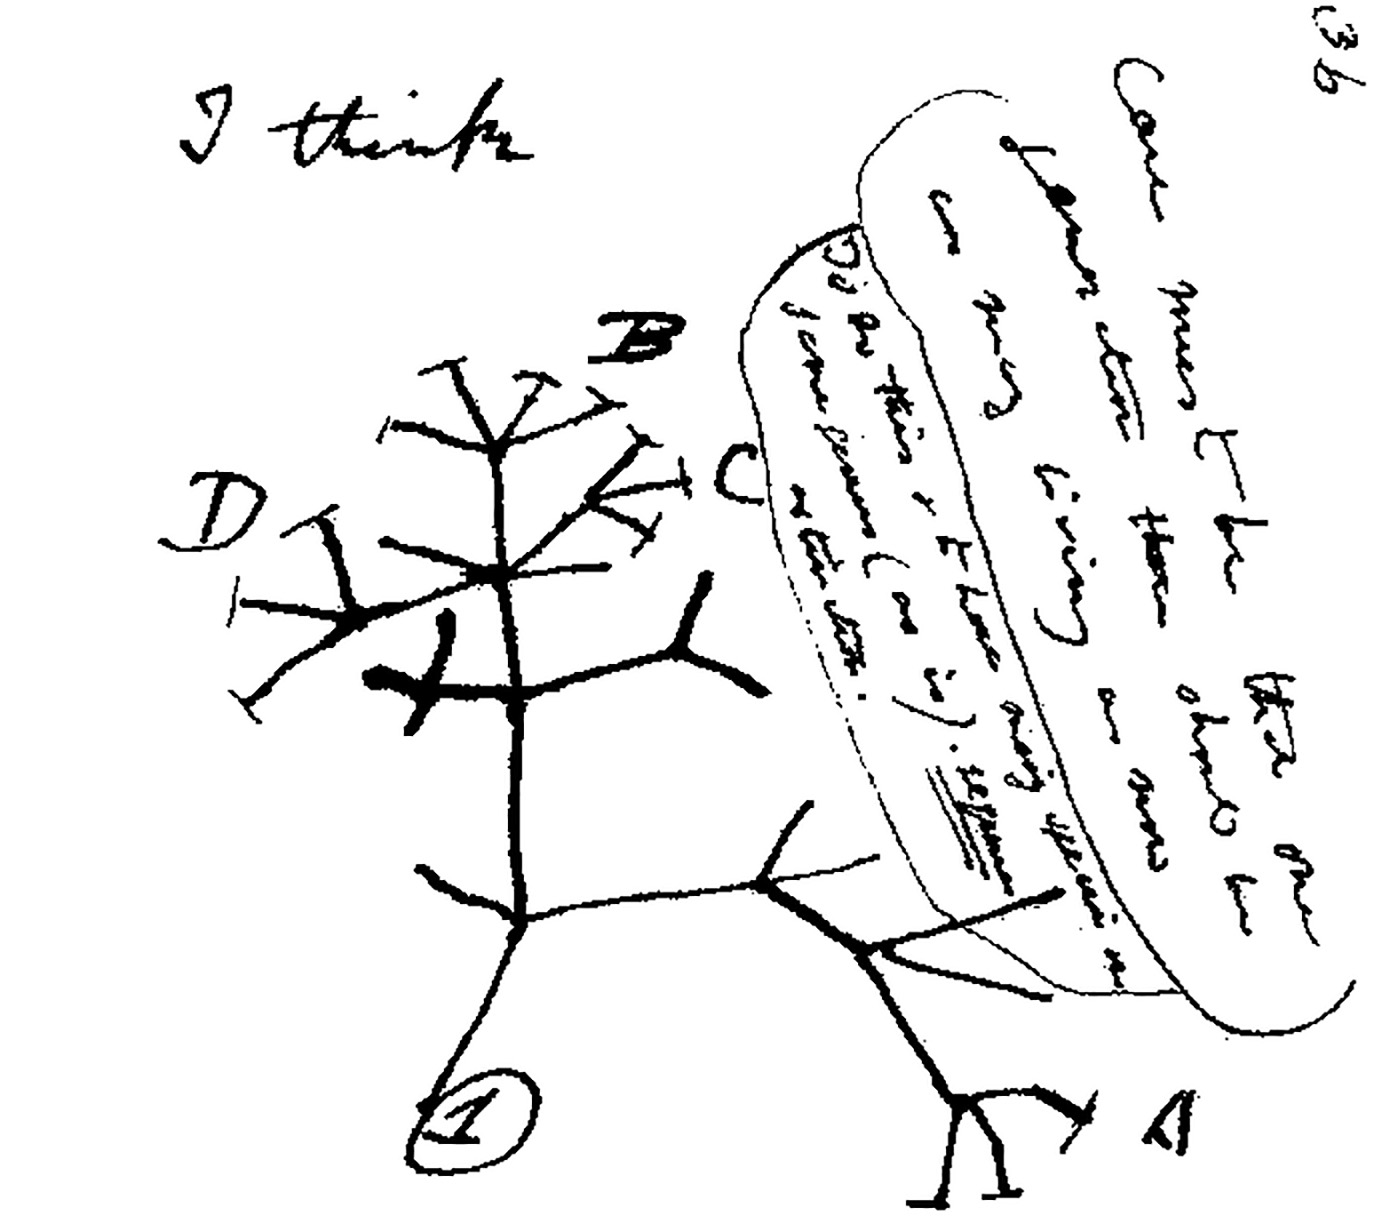 Darwin first tree